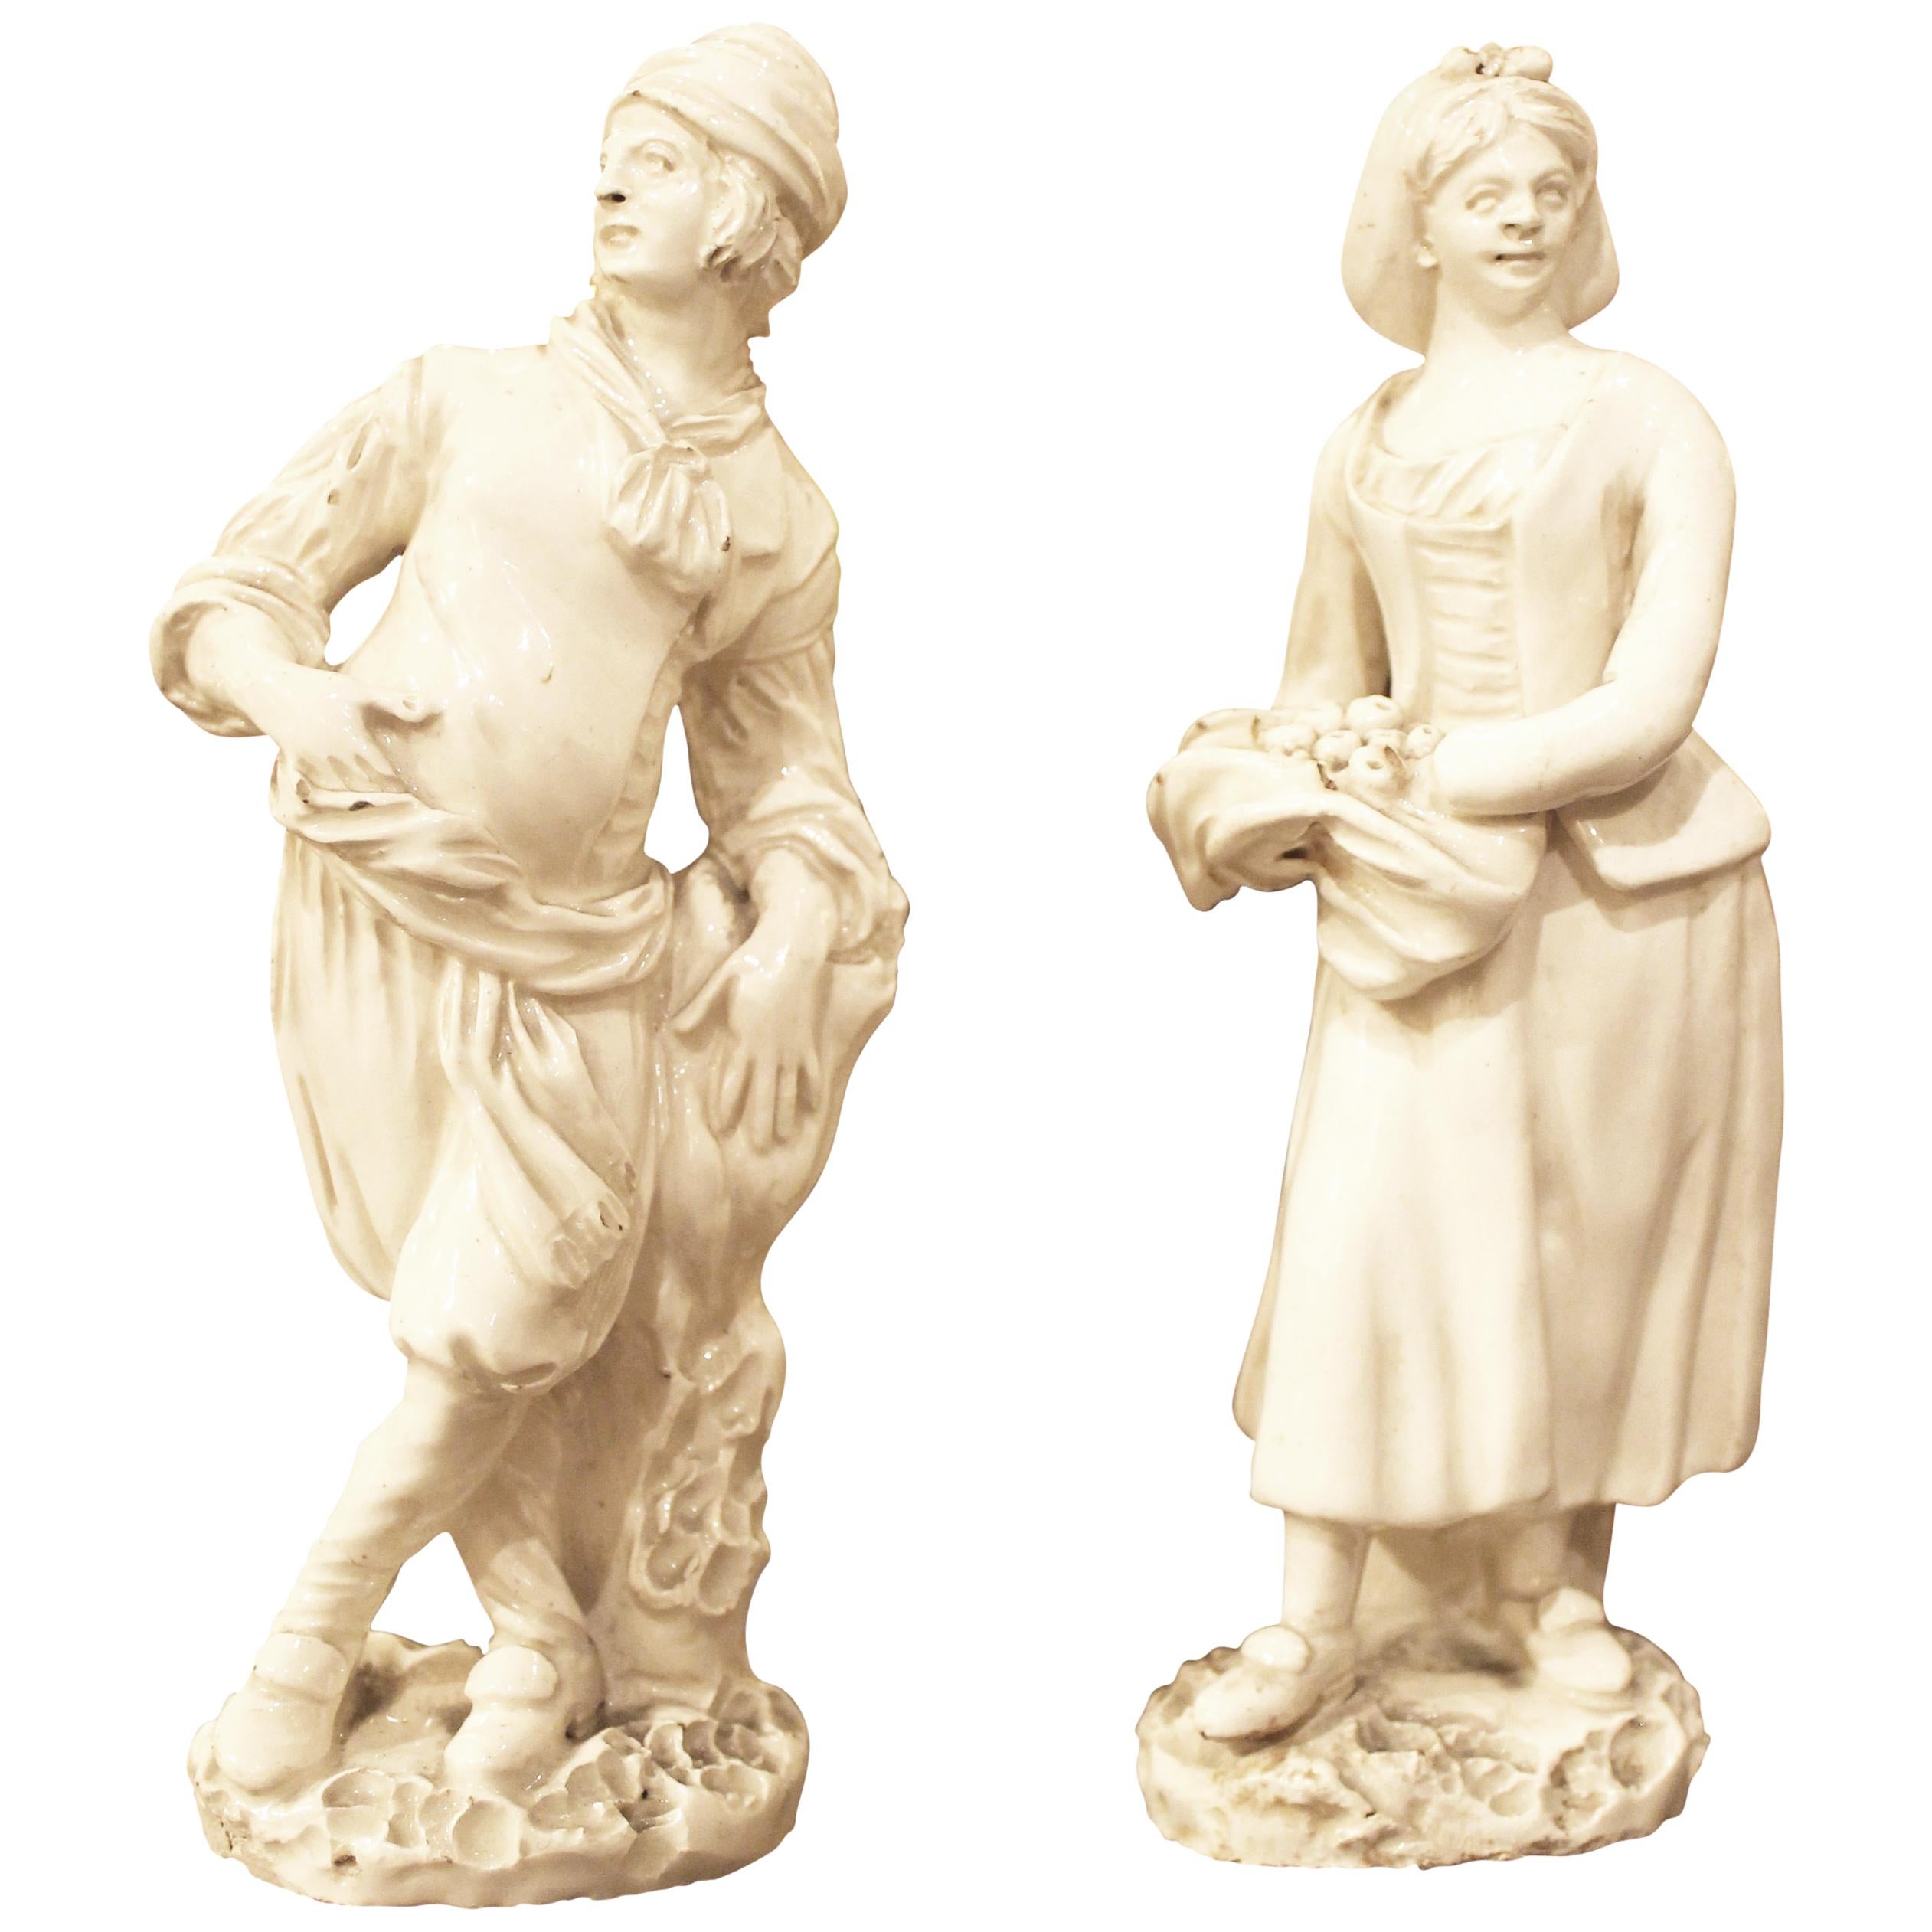 Weiß glasierte Capodimonte-Porzellanstatue mit männlichen und weiblichen Figuren aus dem 18. Jahrhundert